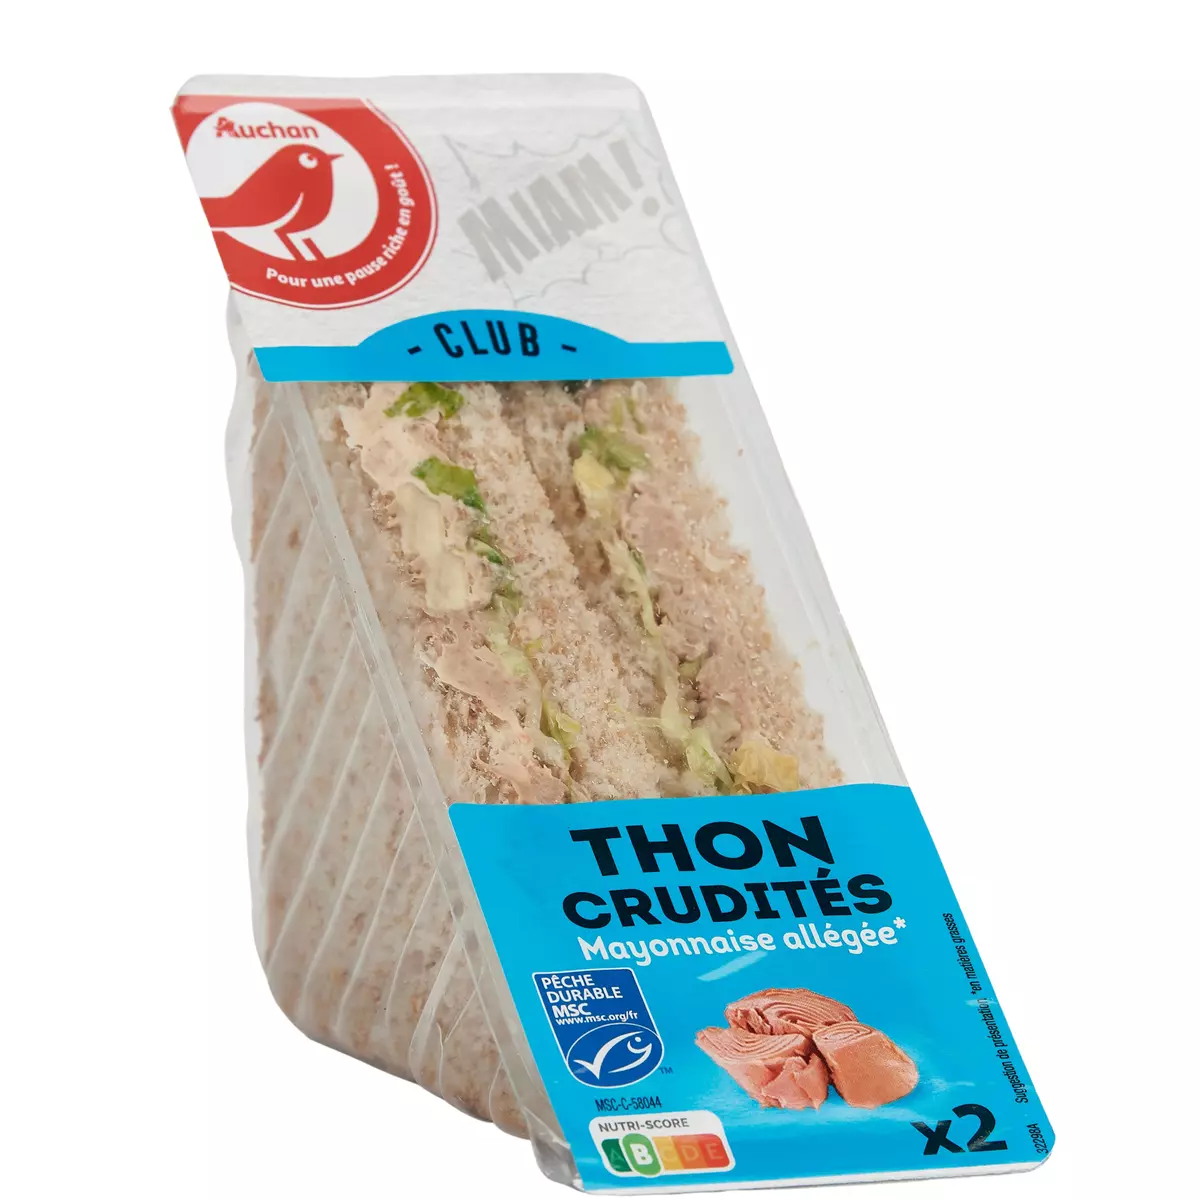 AUCHAN Club sandwich au thon MSC crudités et mayonnaise allégée 2 pièces 145g